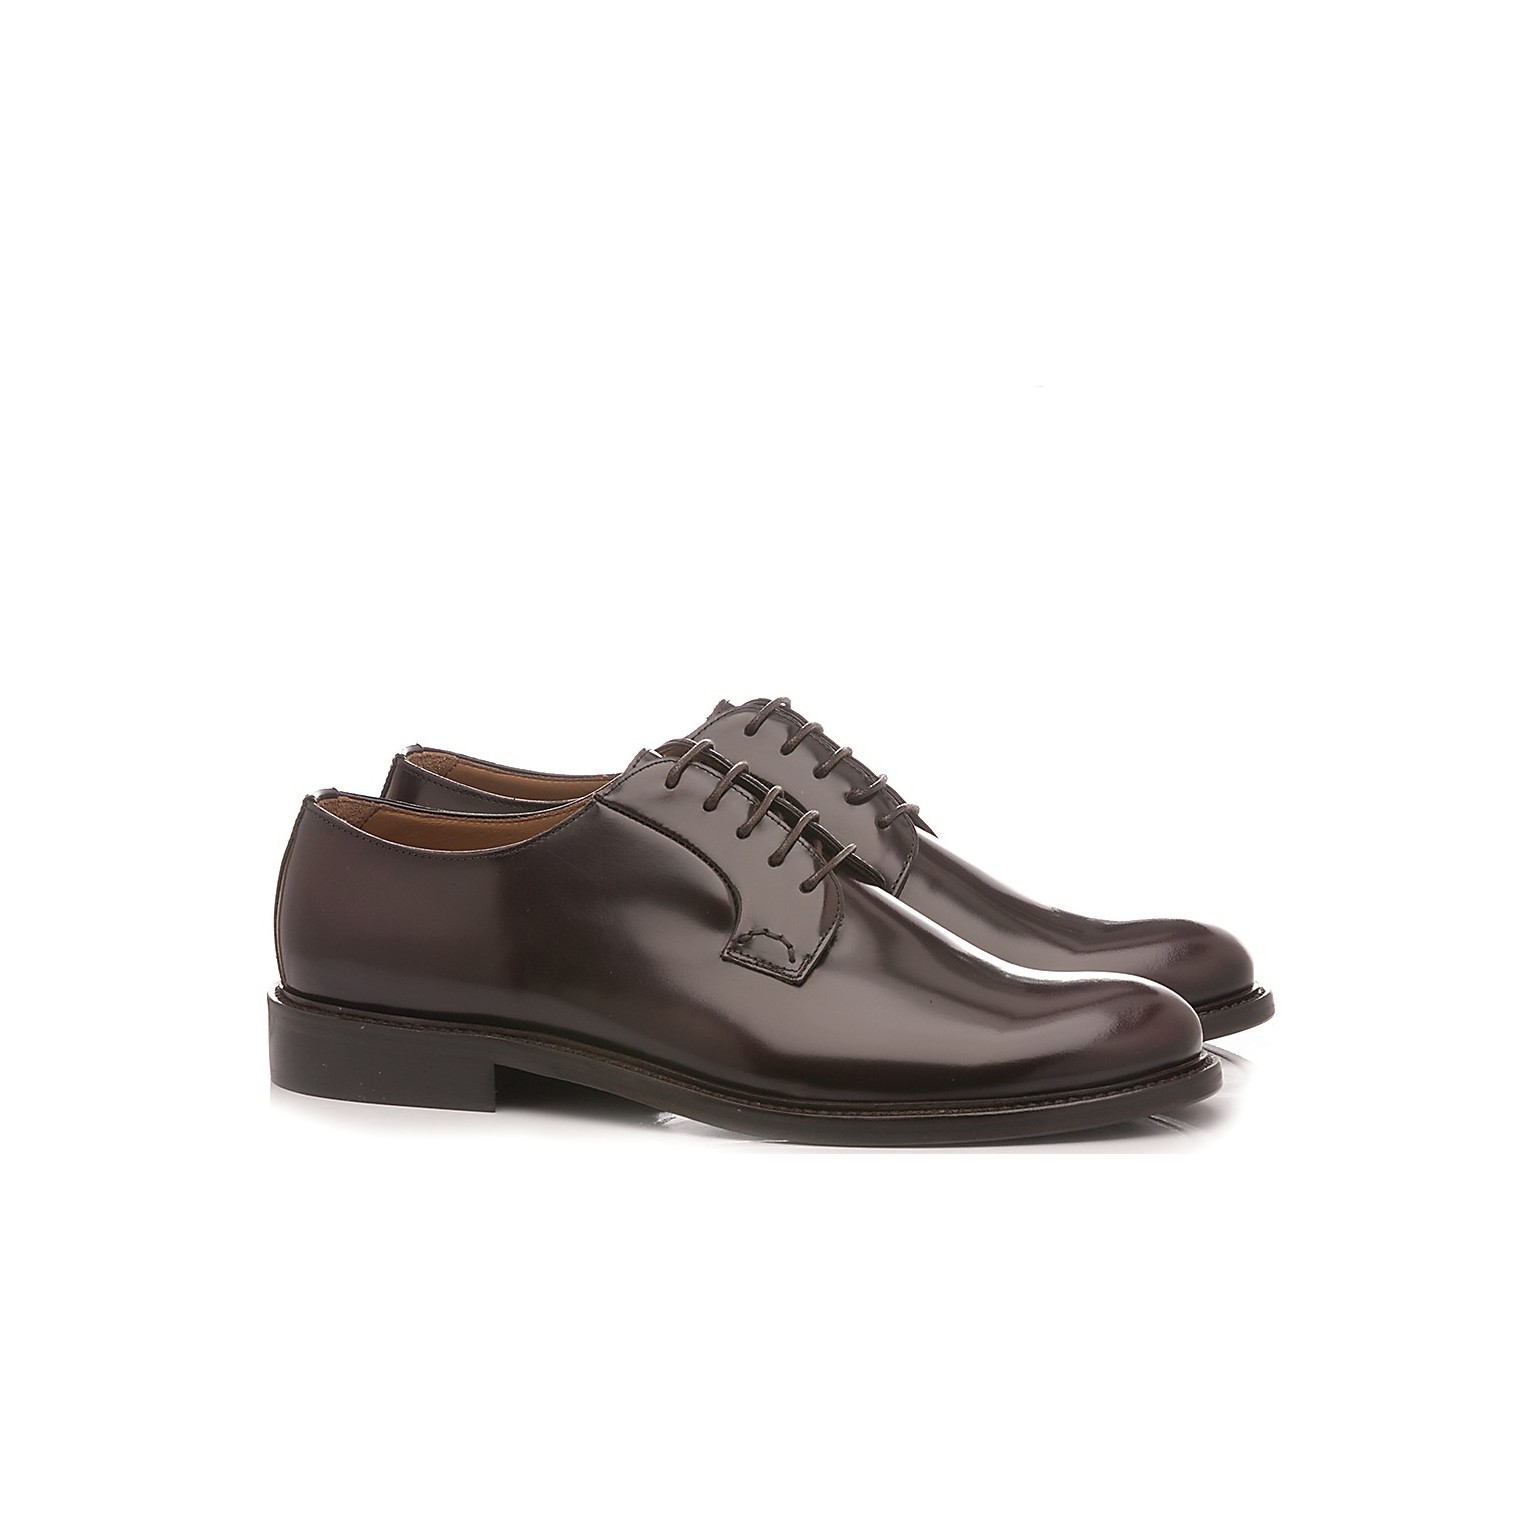 Franco Fedele Men's Classic Shoes Leather Bordeaux 2923